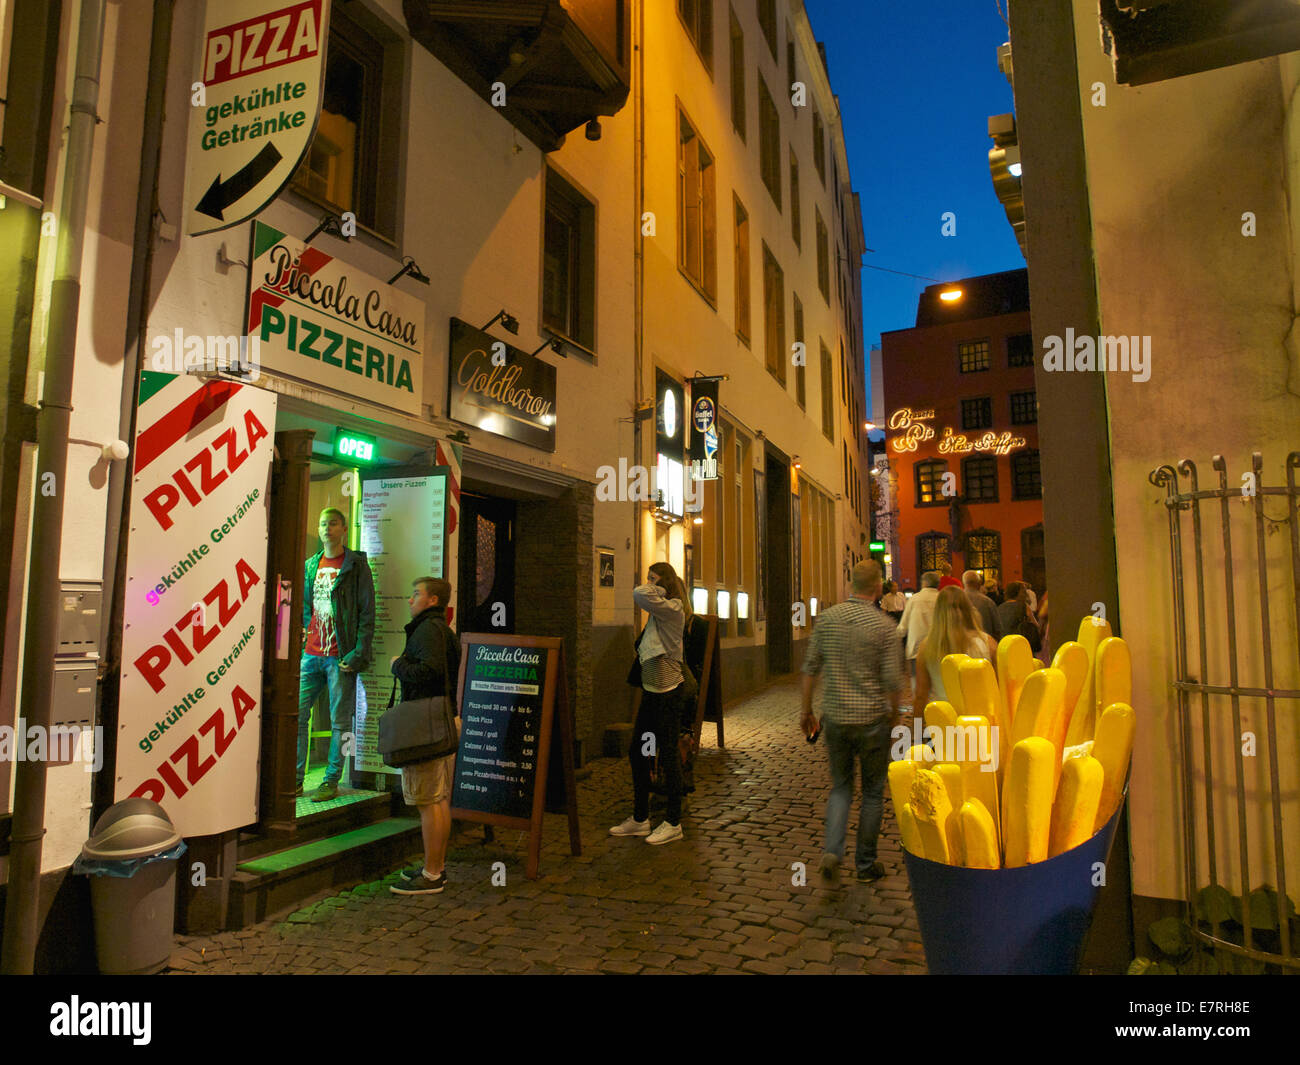 Des choix alimentaires à Cologne nightlife, pizza, frites, ou restaurant de luxe. Cologne, NRW, Allemagne Banque D'Images